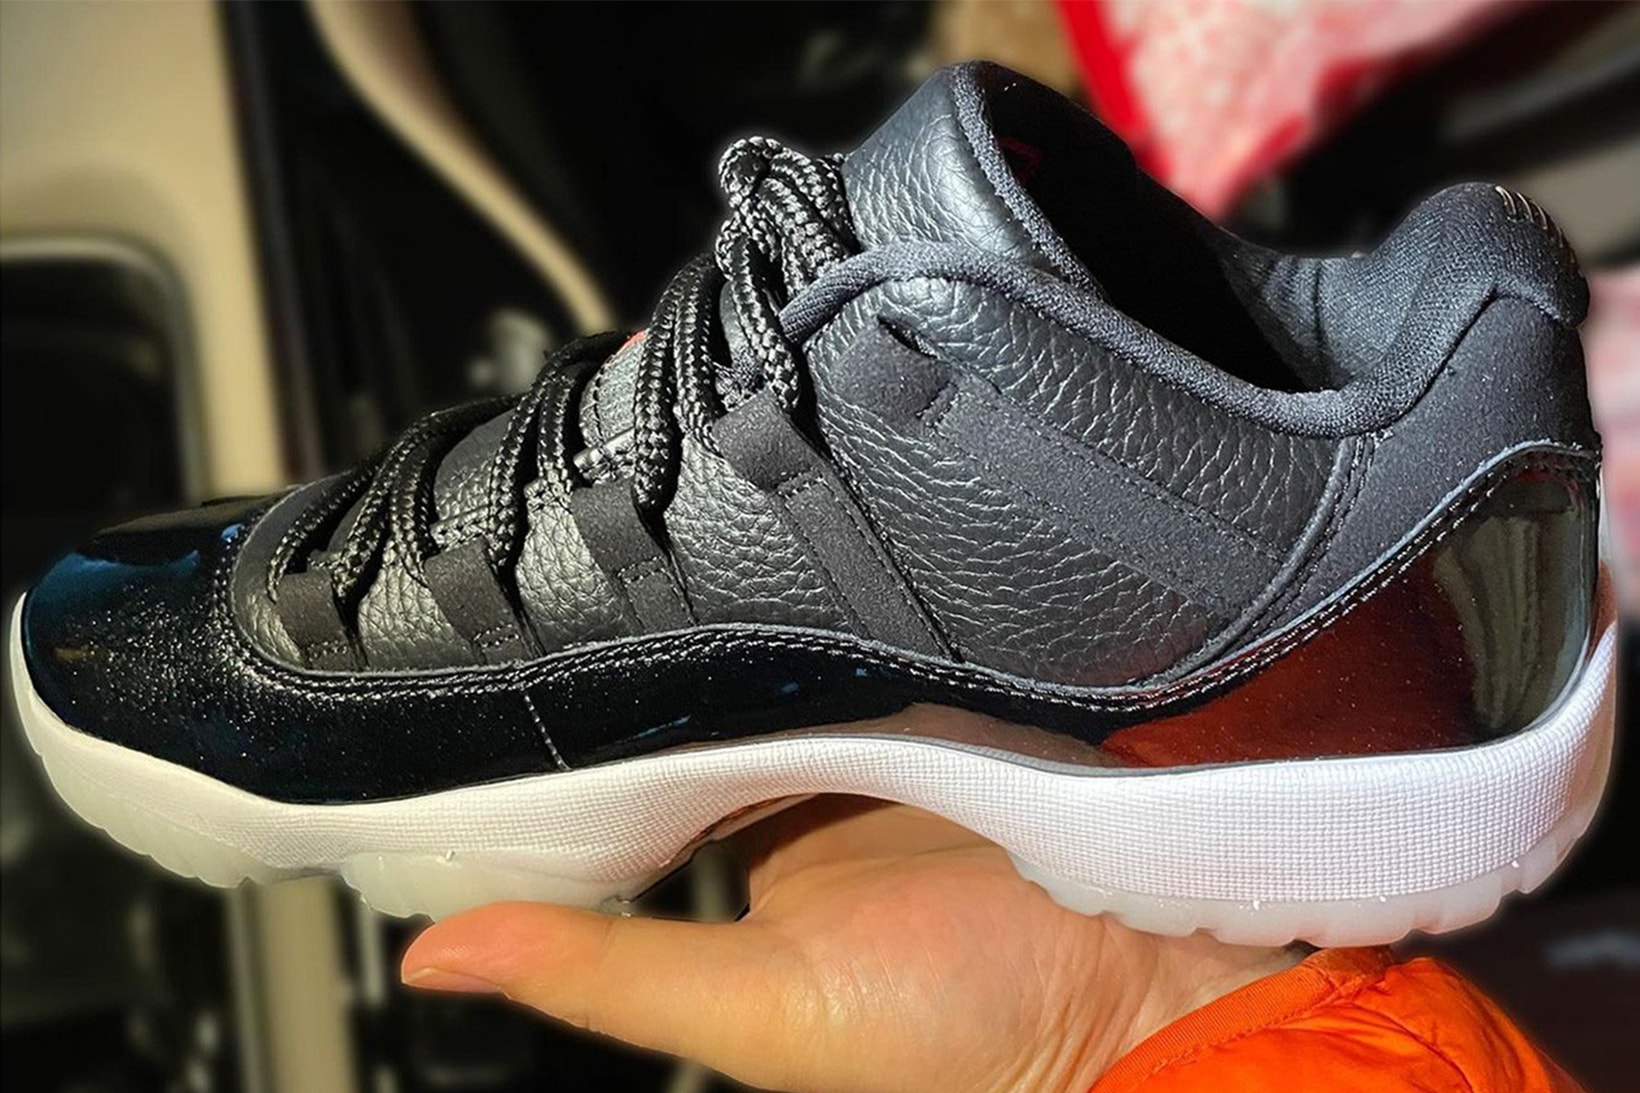 Nike Air Jordan 11 Low "72–10" Sneakers Black Gym Red Side View